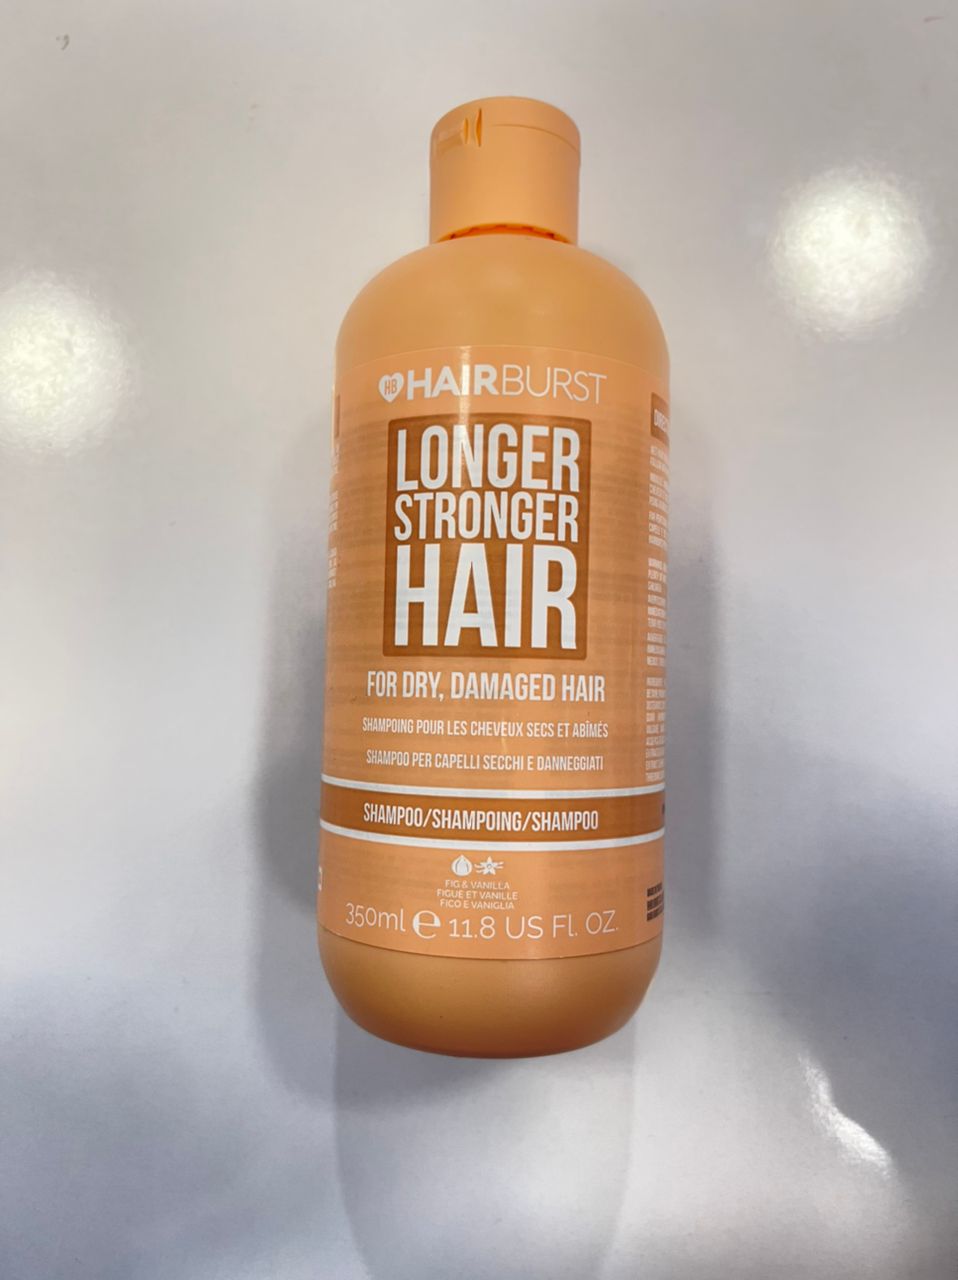 شامپو هیربرست Hairburst نارنجی مخصوص موهای خشک و آسیب دیده با رنگ و حرارت حجم 350ml | رشد مو، ضد ریزش، بدون سولفات، ترمیم قوی